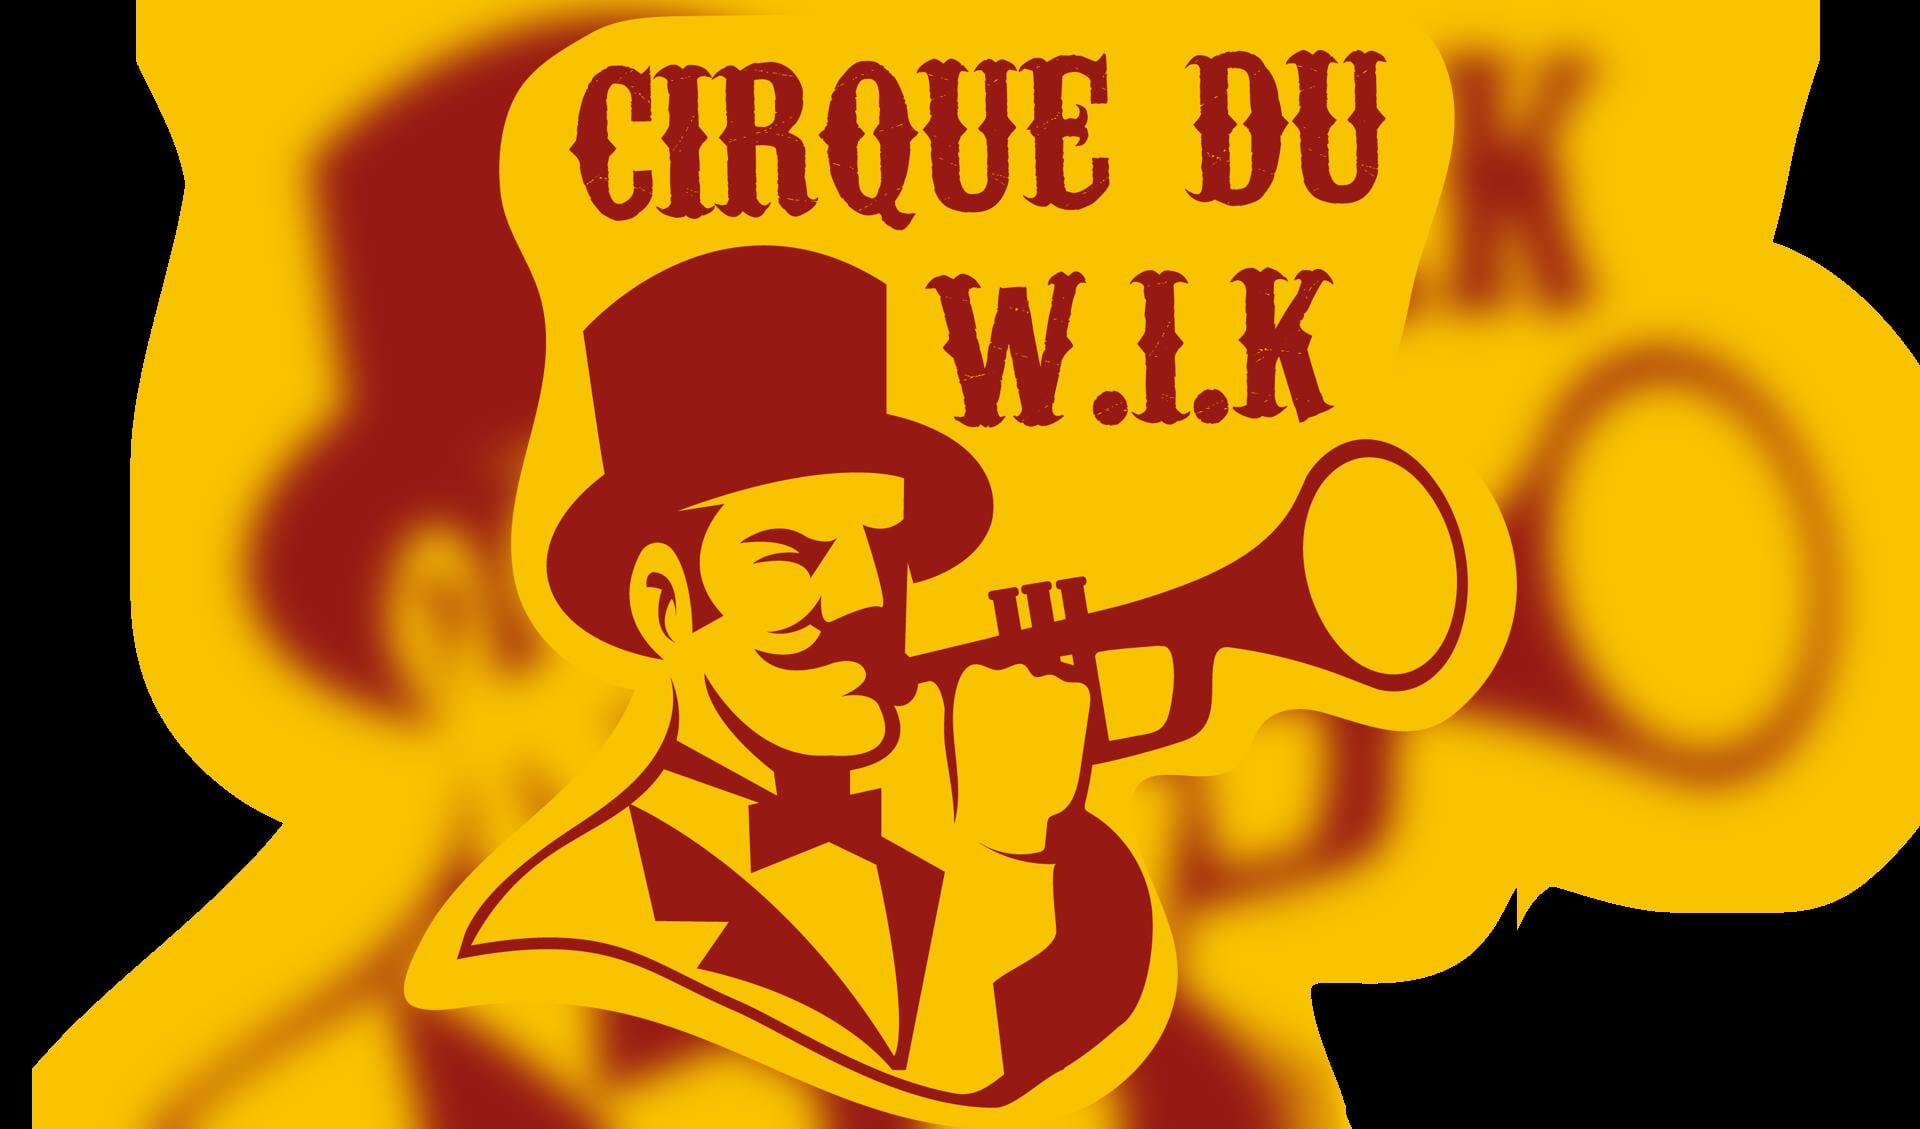 Geffense variant Cirque du Soleil ‘wervelende show voor iedereen’